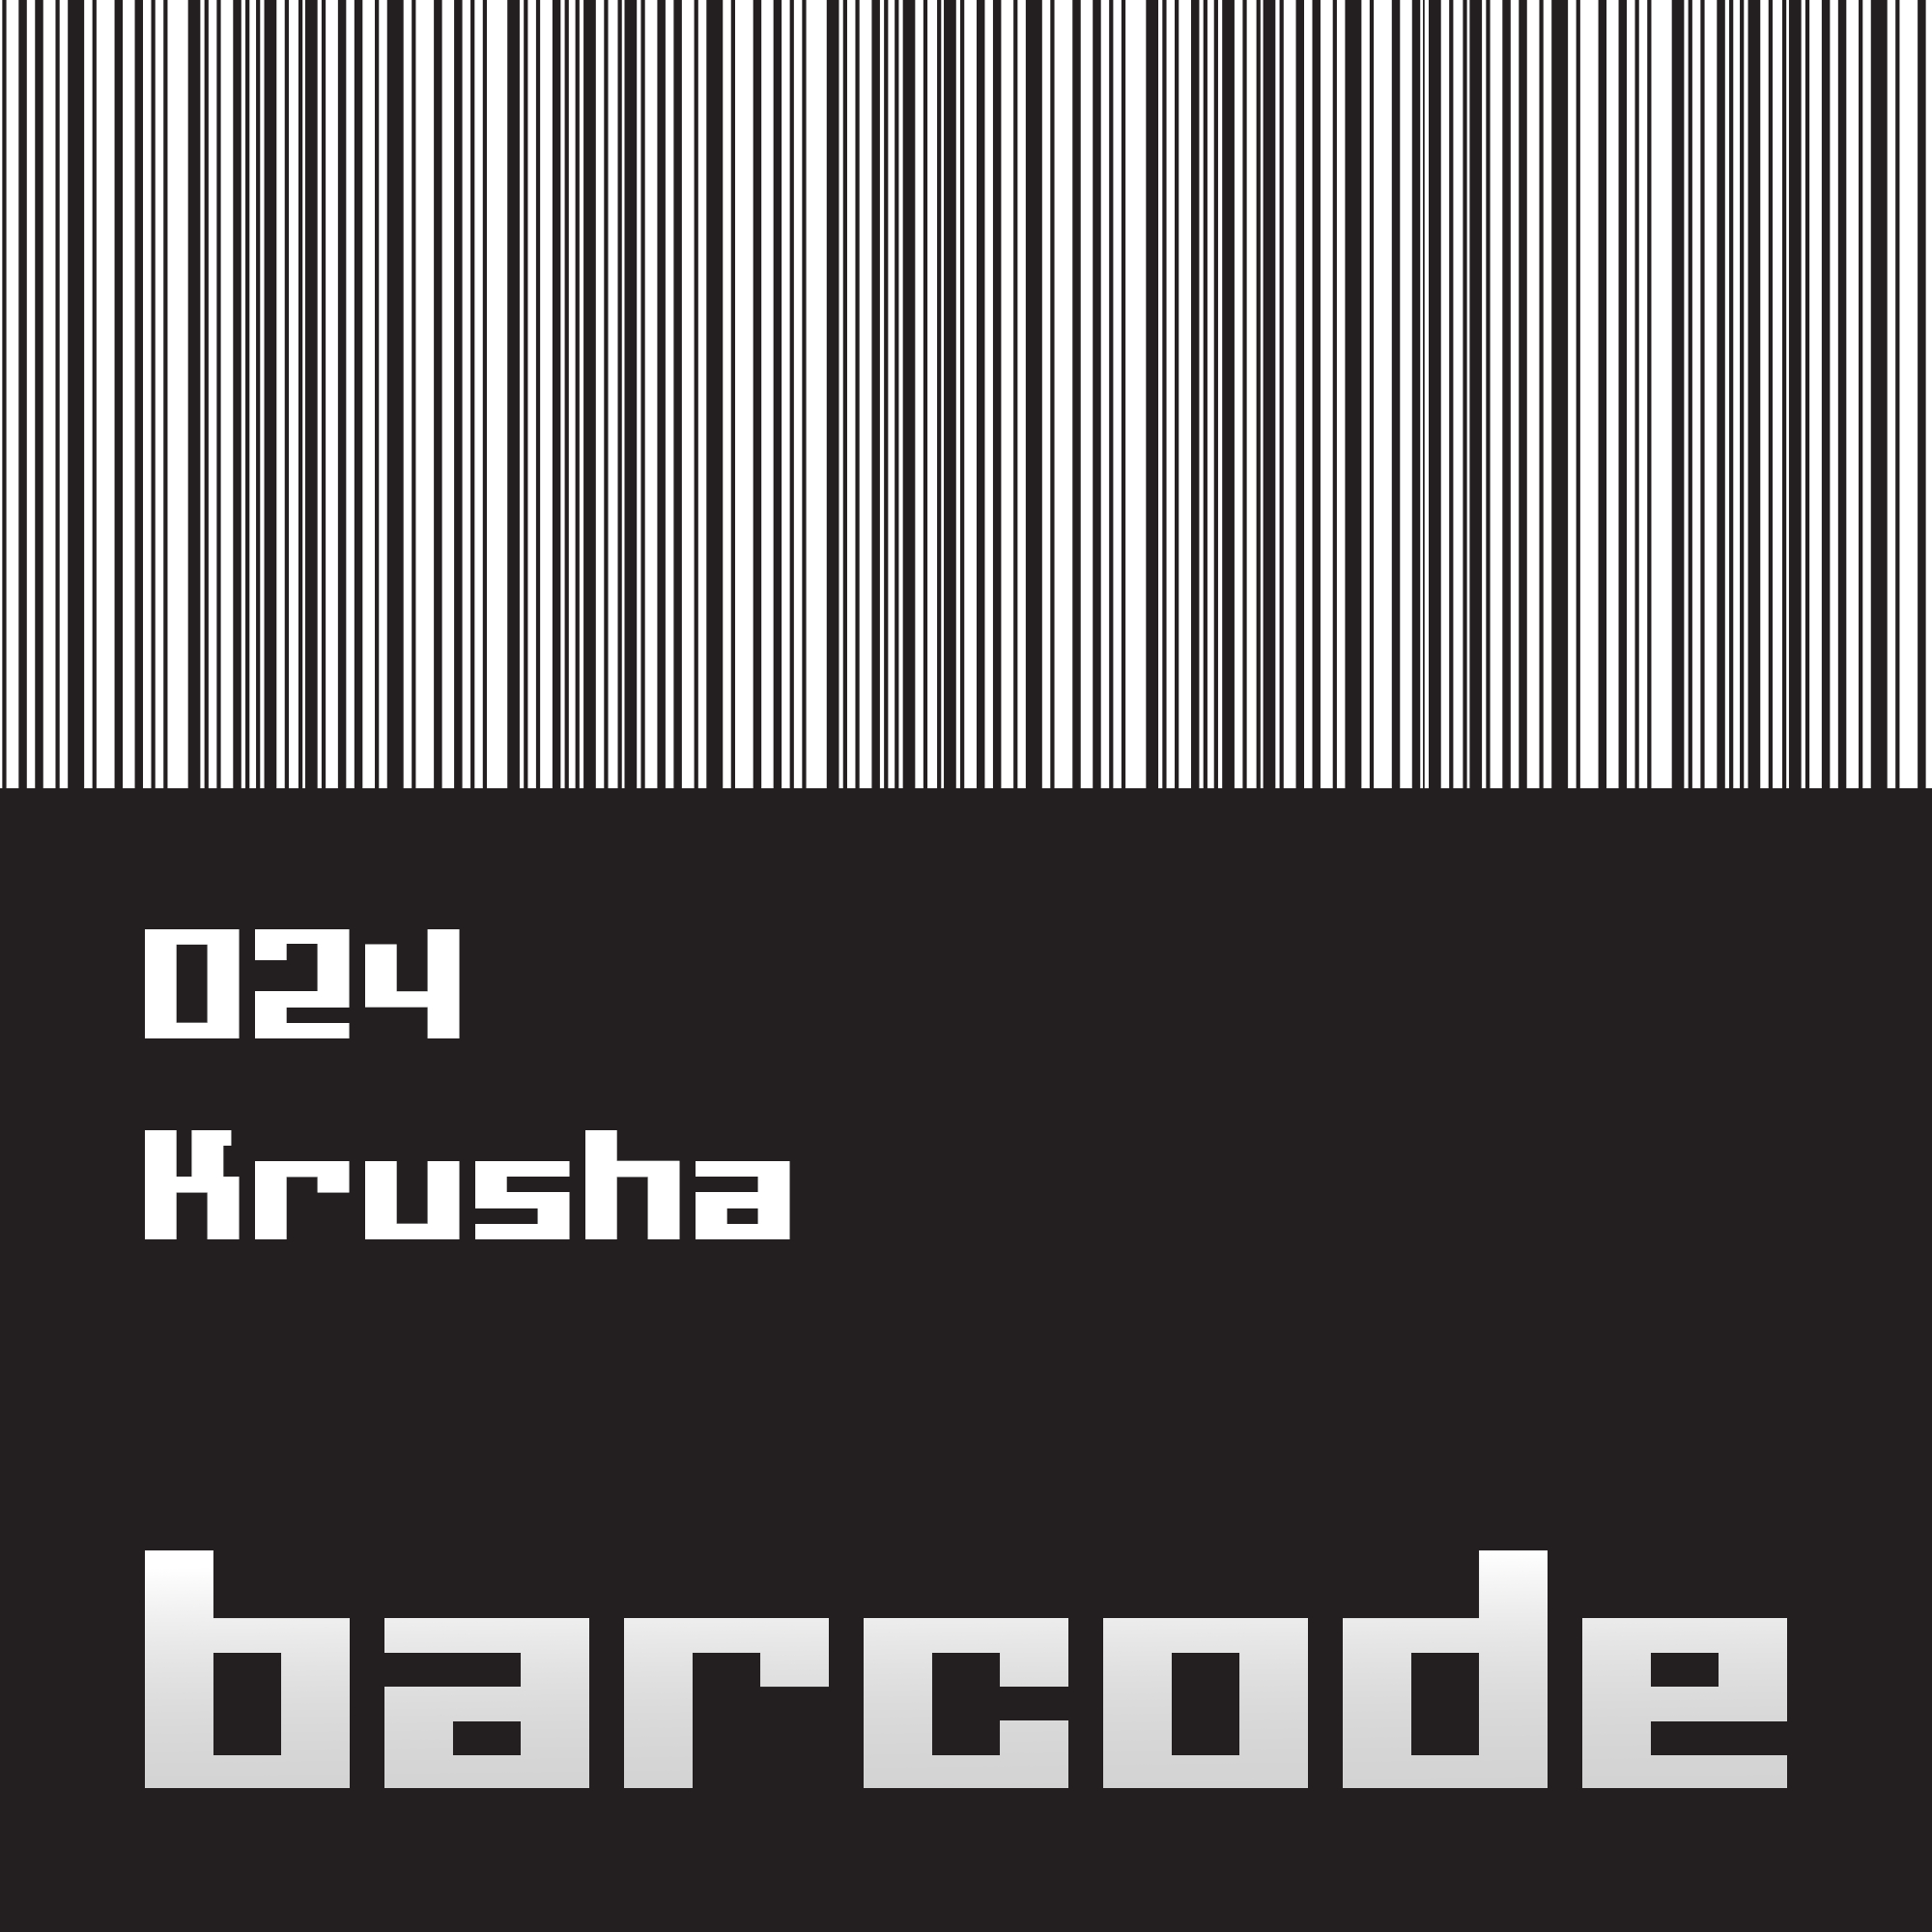 Barcode024.jpg